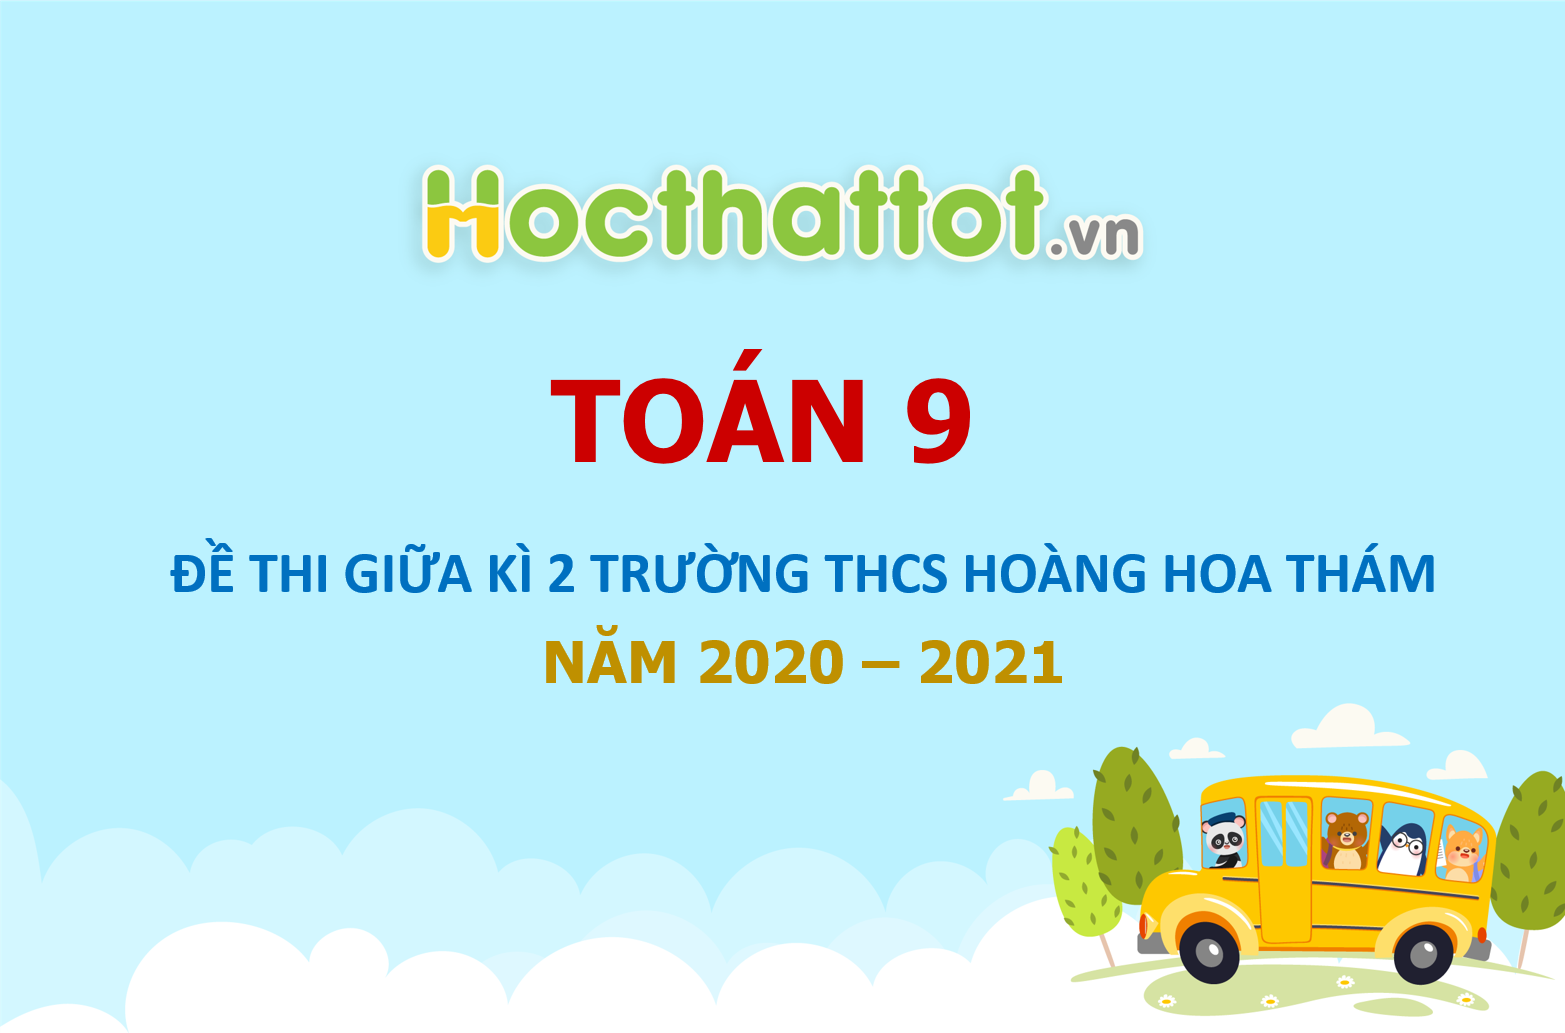 de-thi-giua-hk2-toan-9-nam-2020-2021-truong-thcs-hoang-hoa-tham-ha-noi